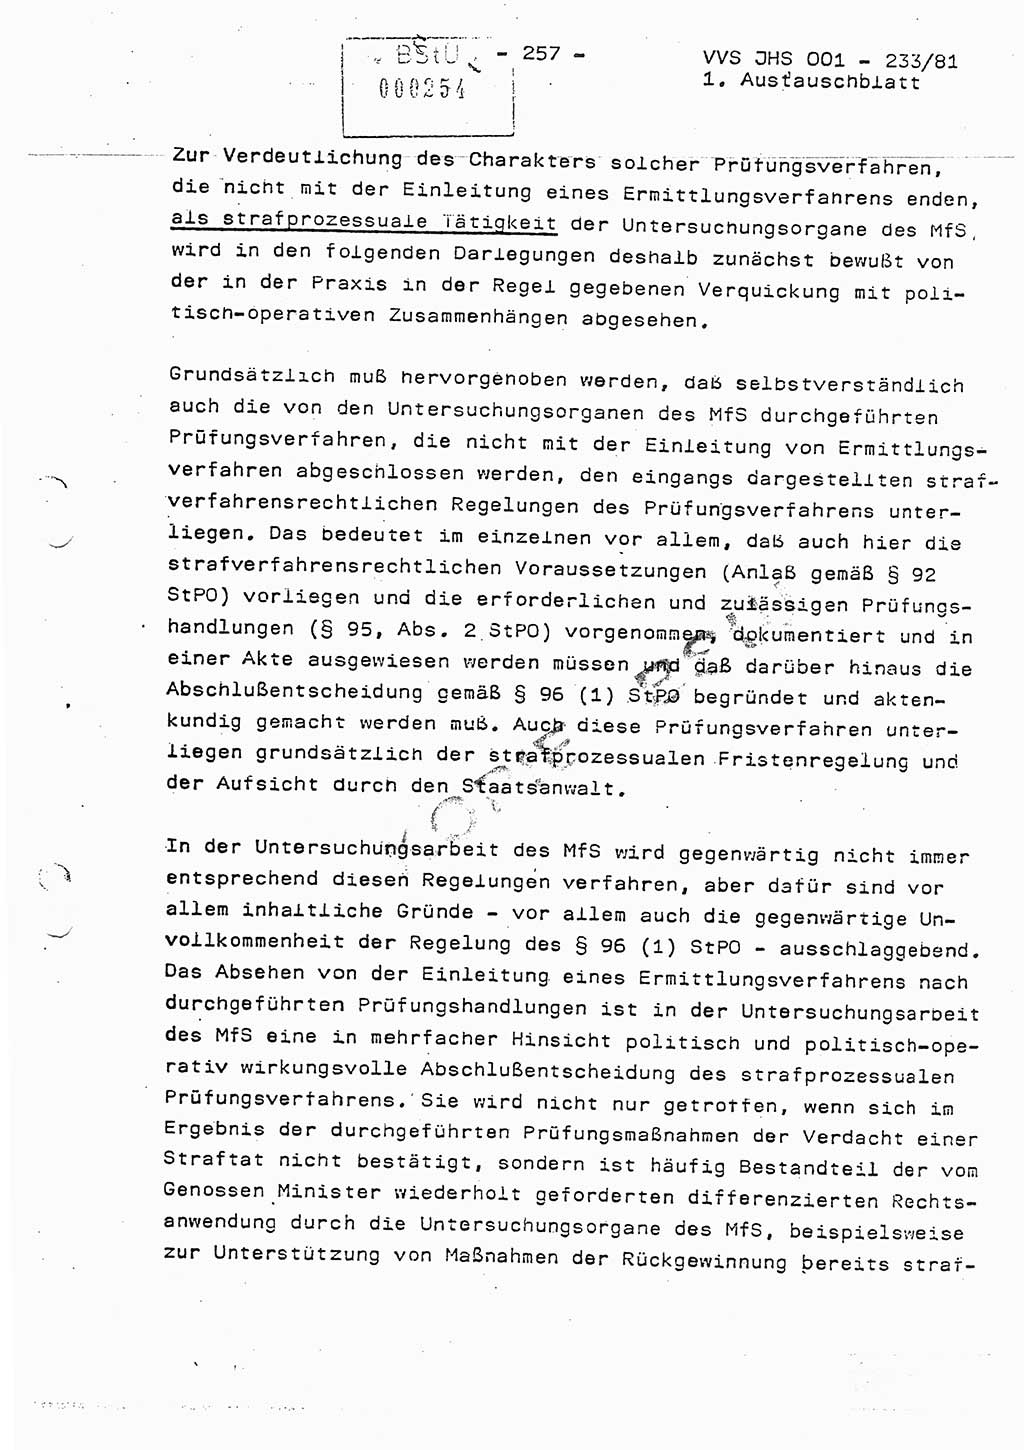 Dissertation Oberstleutnant Horst Zank (JHS), Oberstleutnant Dr. Karl-Heinz Knoblauch (JHS), Oberstleutnant Gustav-Adolf Kowalewski (HA Ⅸ), Oberstleutnant Wolfgang Plötner (HA Ⅸ), Ministerium für Staatssicherheit (MfS) [Deutsche Demokratische Republik (DDR)], Juristische Hochschule (JHS), Vertrauliche Verschlußsache (VVS) o001-233/81, Potsdam 1981, Blatt 257 (Diss. MfS DDR JHS VVS o001-233/81 1981, Bl. 257)